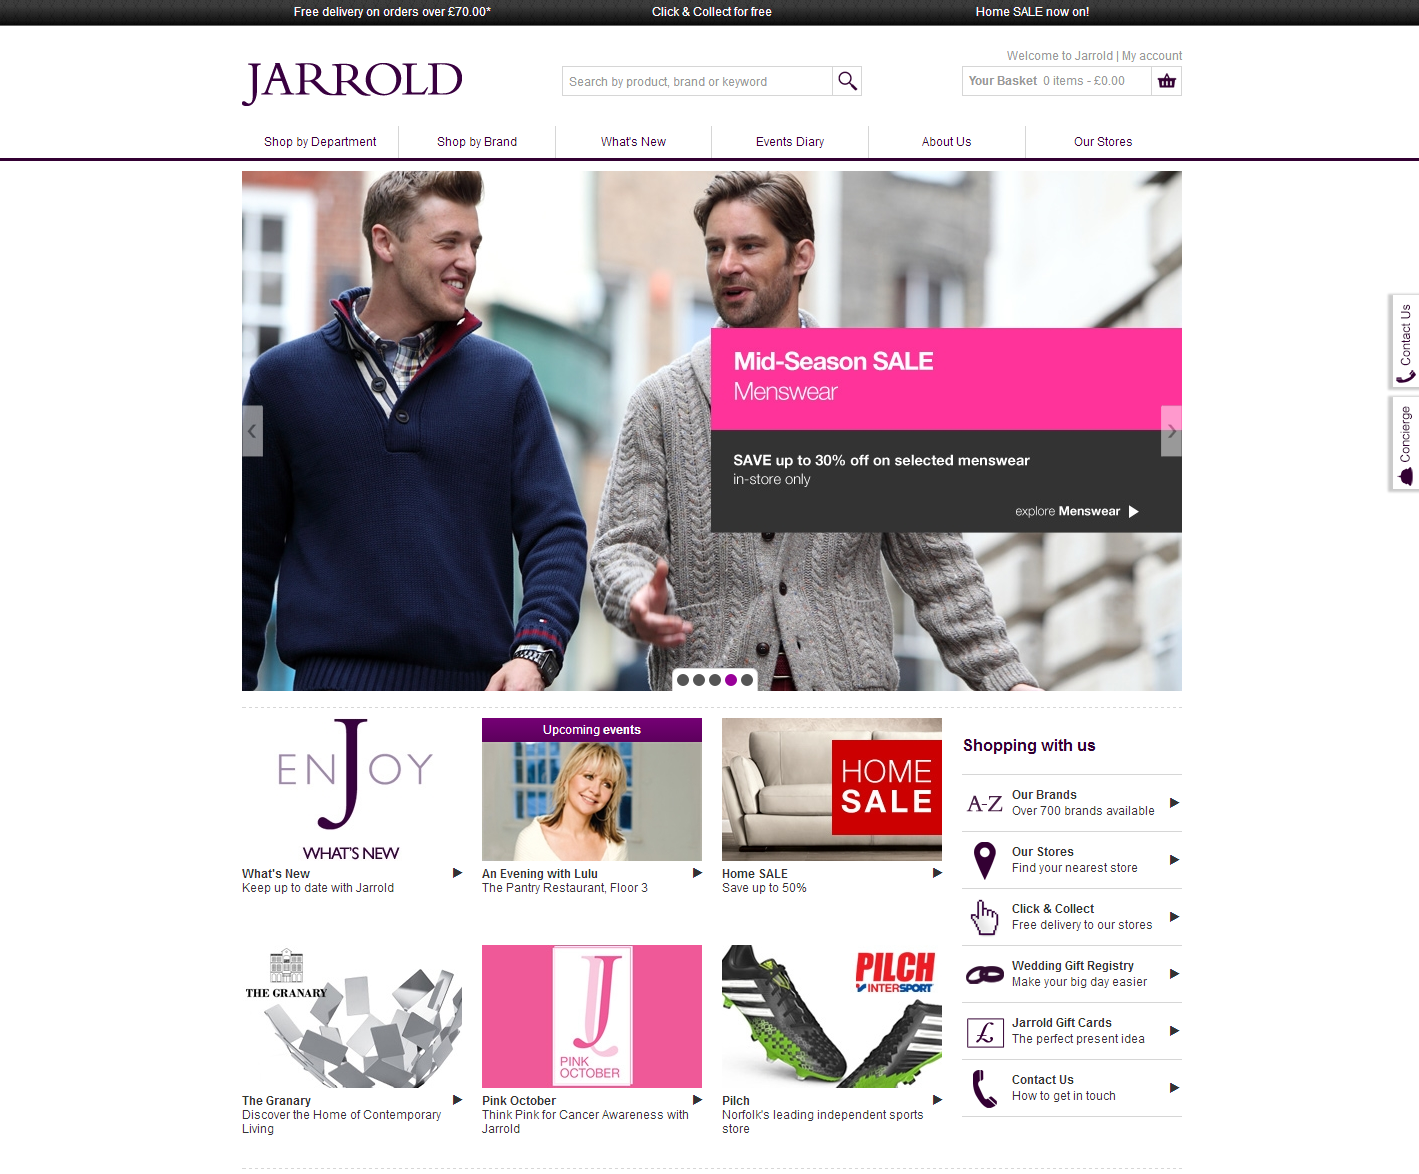 Jarrold's brand new website